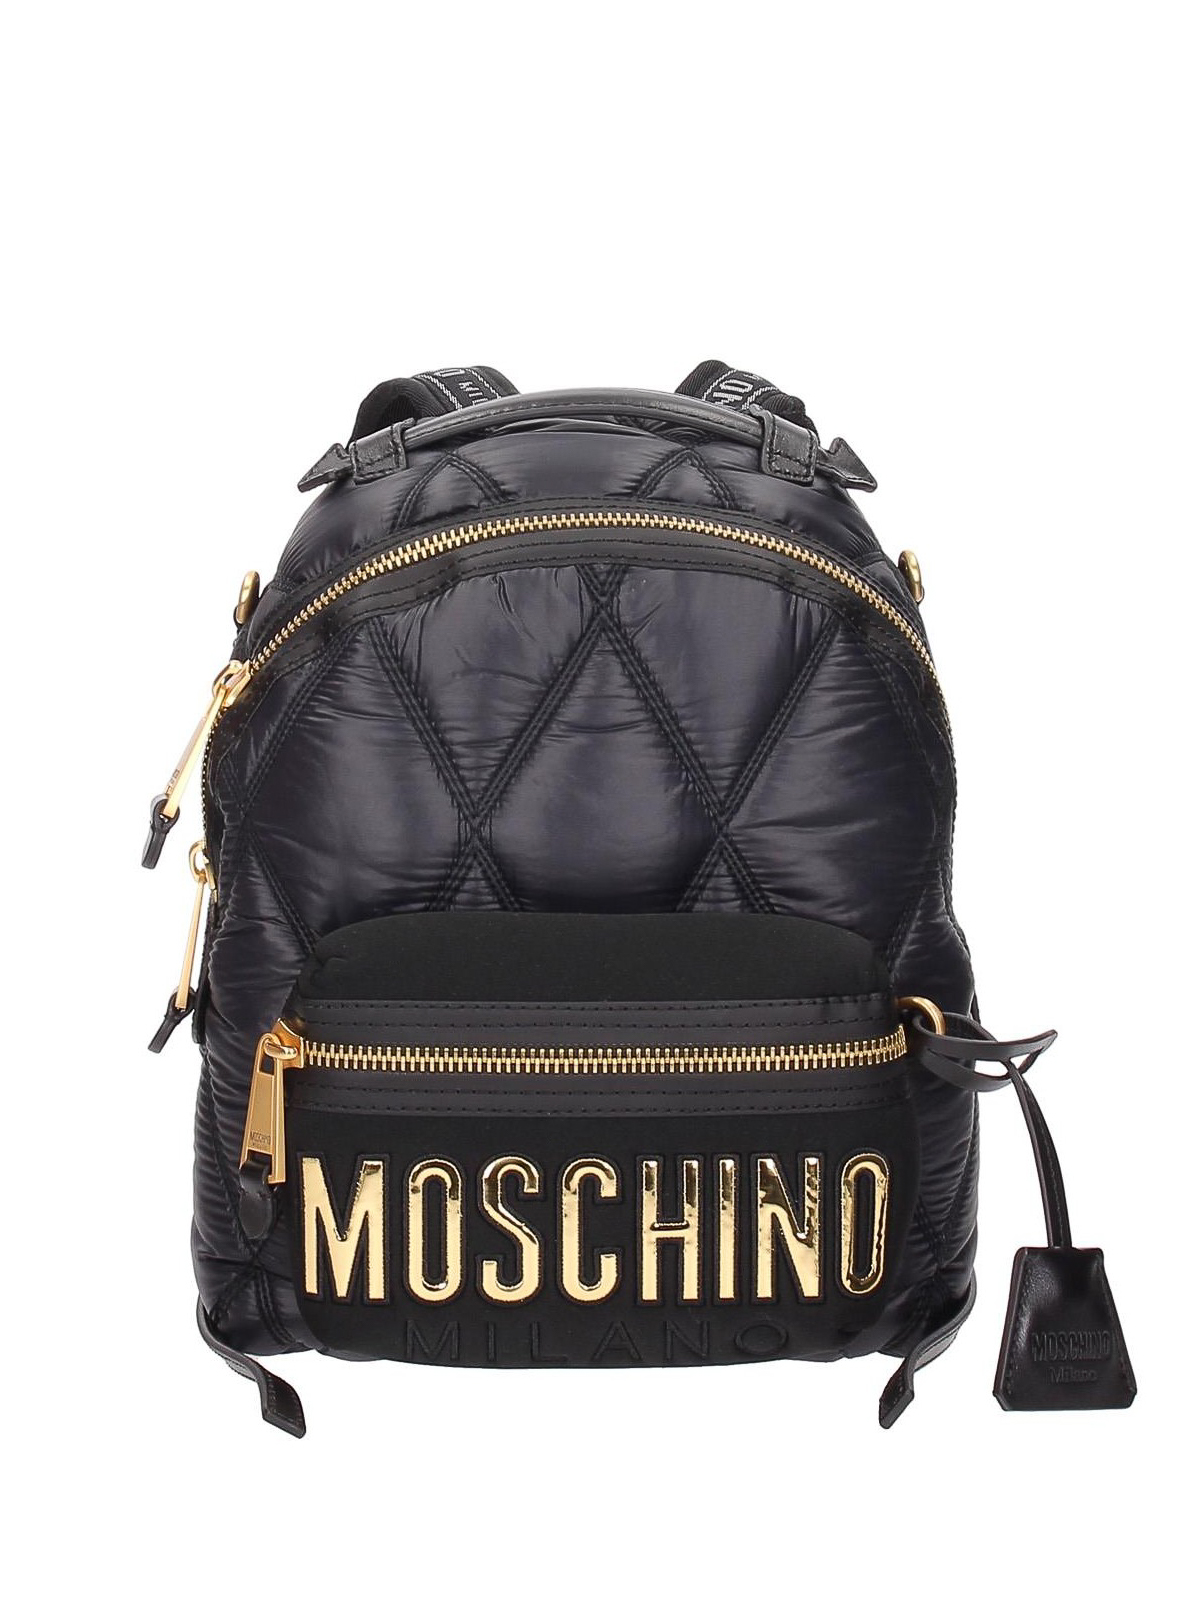 moschino backpack hk